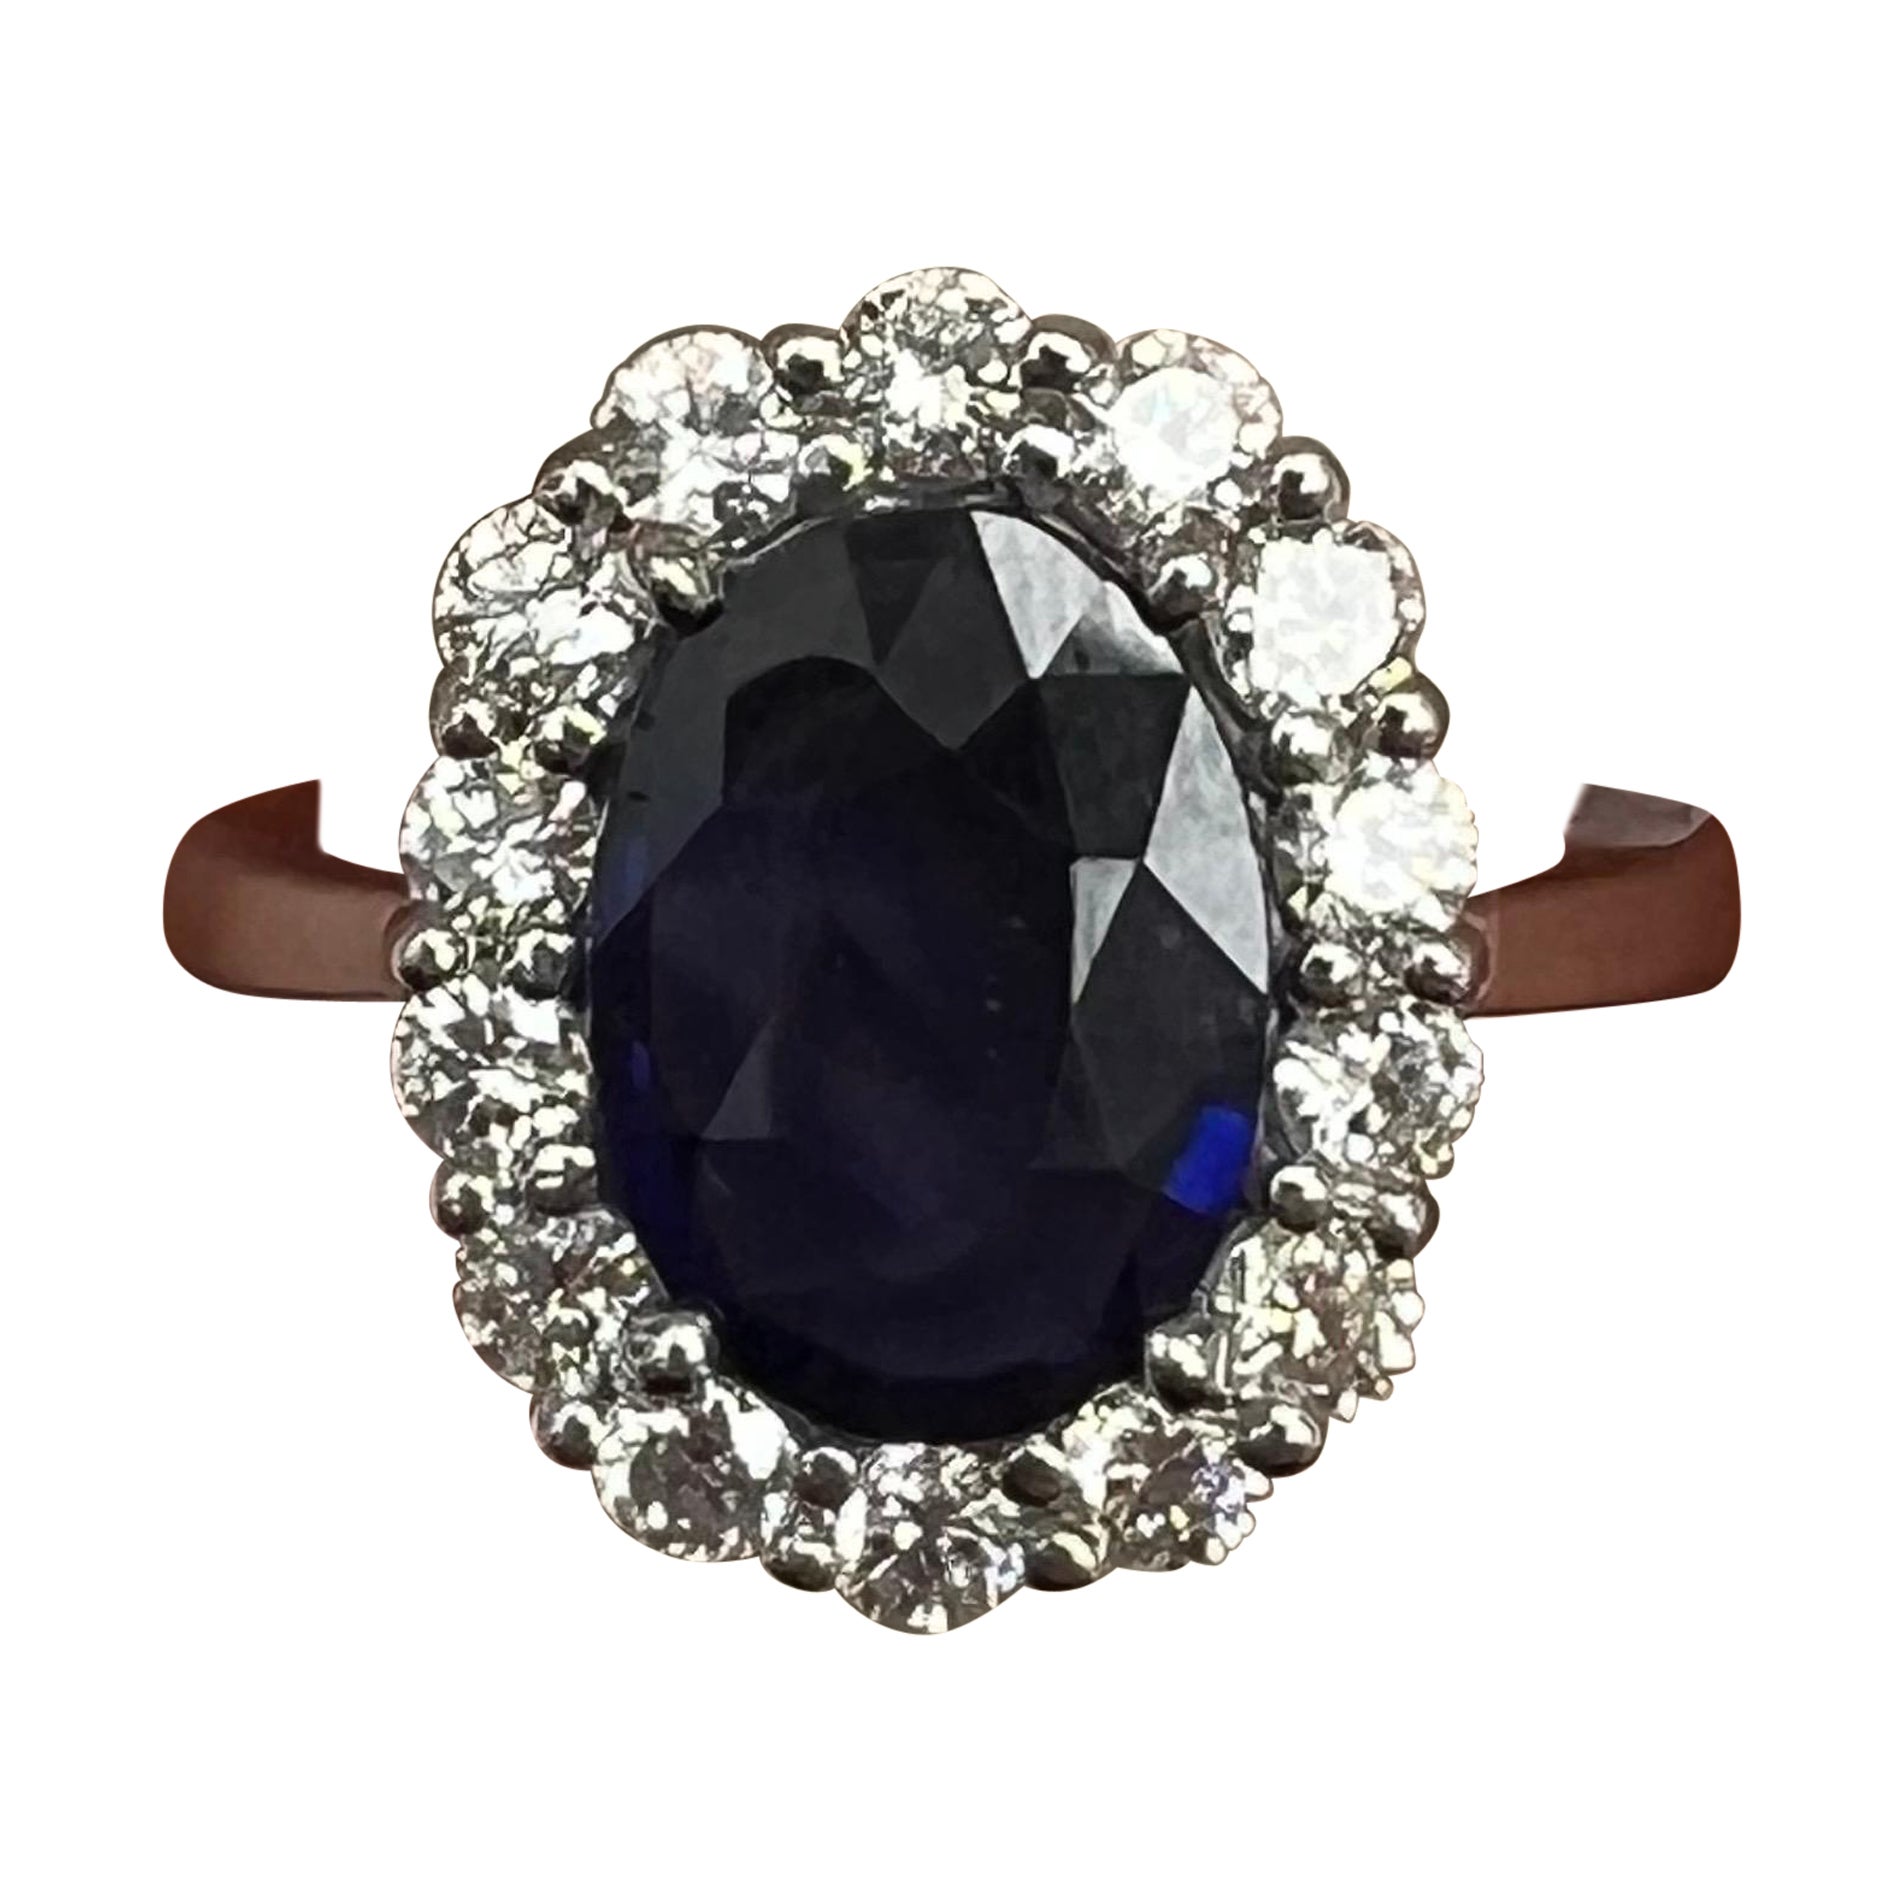 Natural Blue Sapphire Diamond Ring in 18k White Gold.
2.47 Carat Natural Blue Oval Sapphire mounted in a 18k White Gold Diamond Halo Ring.
Natural Full Brilliant Cut Diamonds and Oval Blue Sapphire.
Lady D Forever

